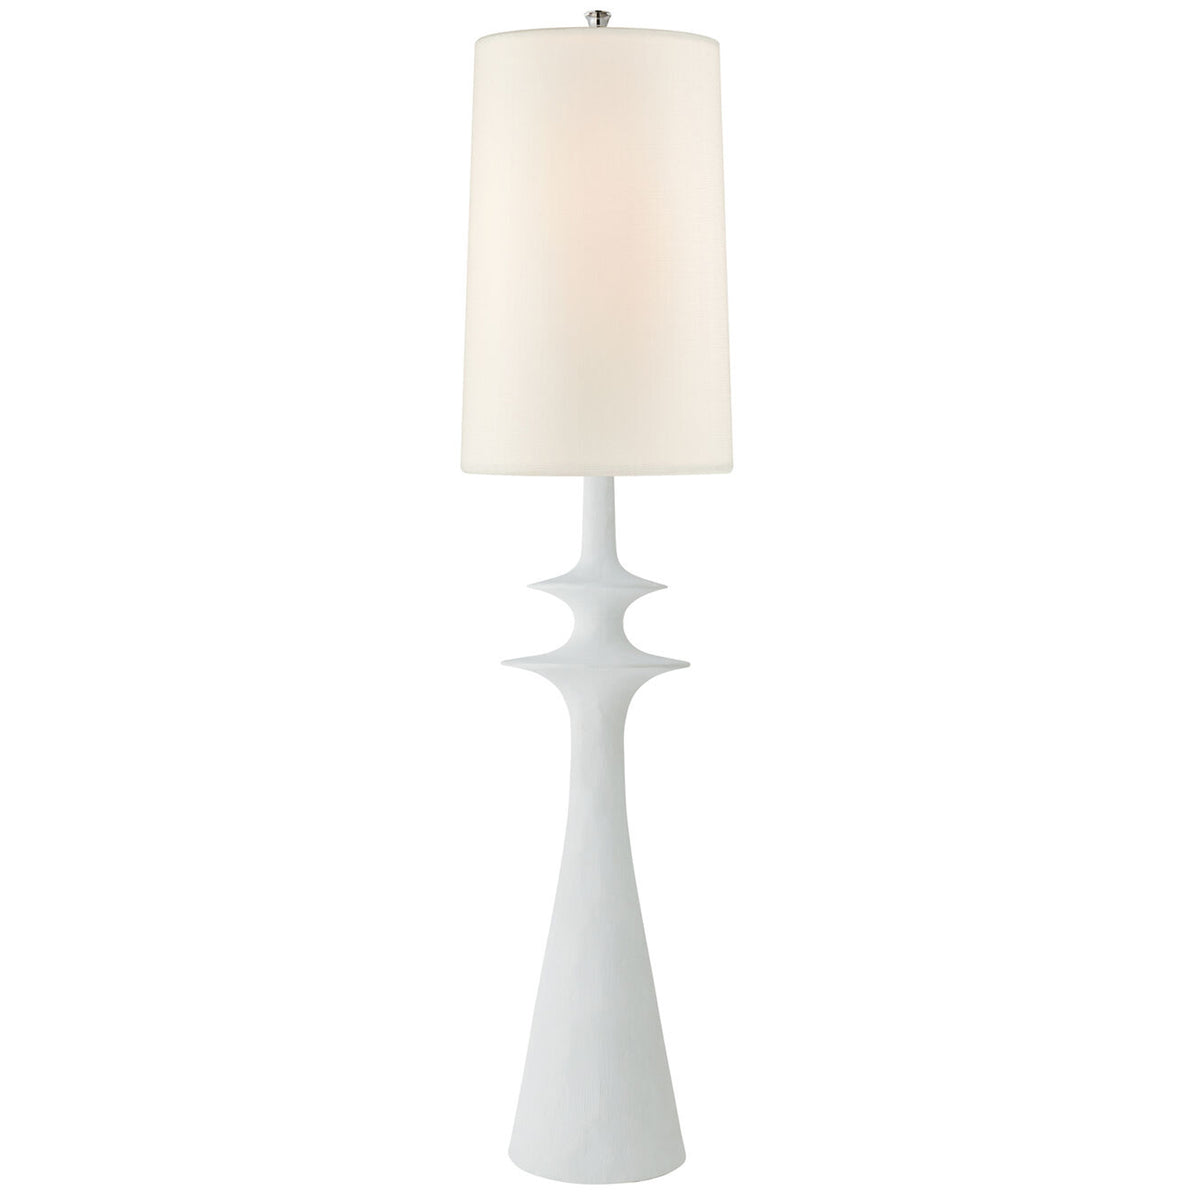 Lakmos Floor Lamp, Plaster White